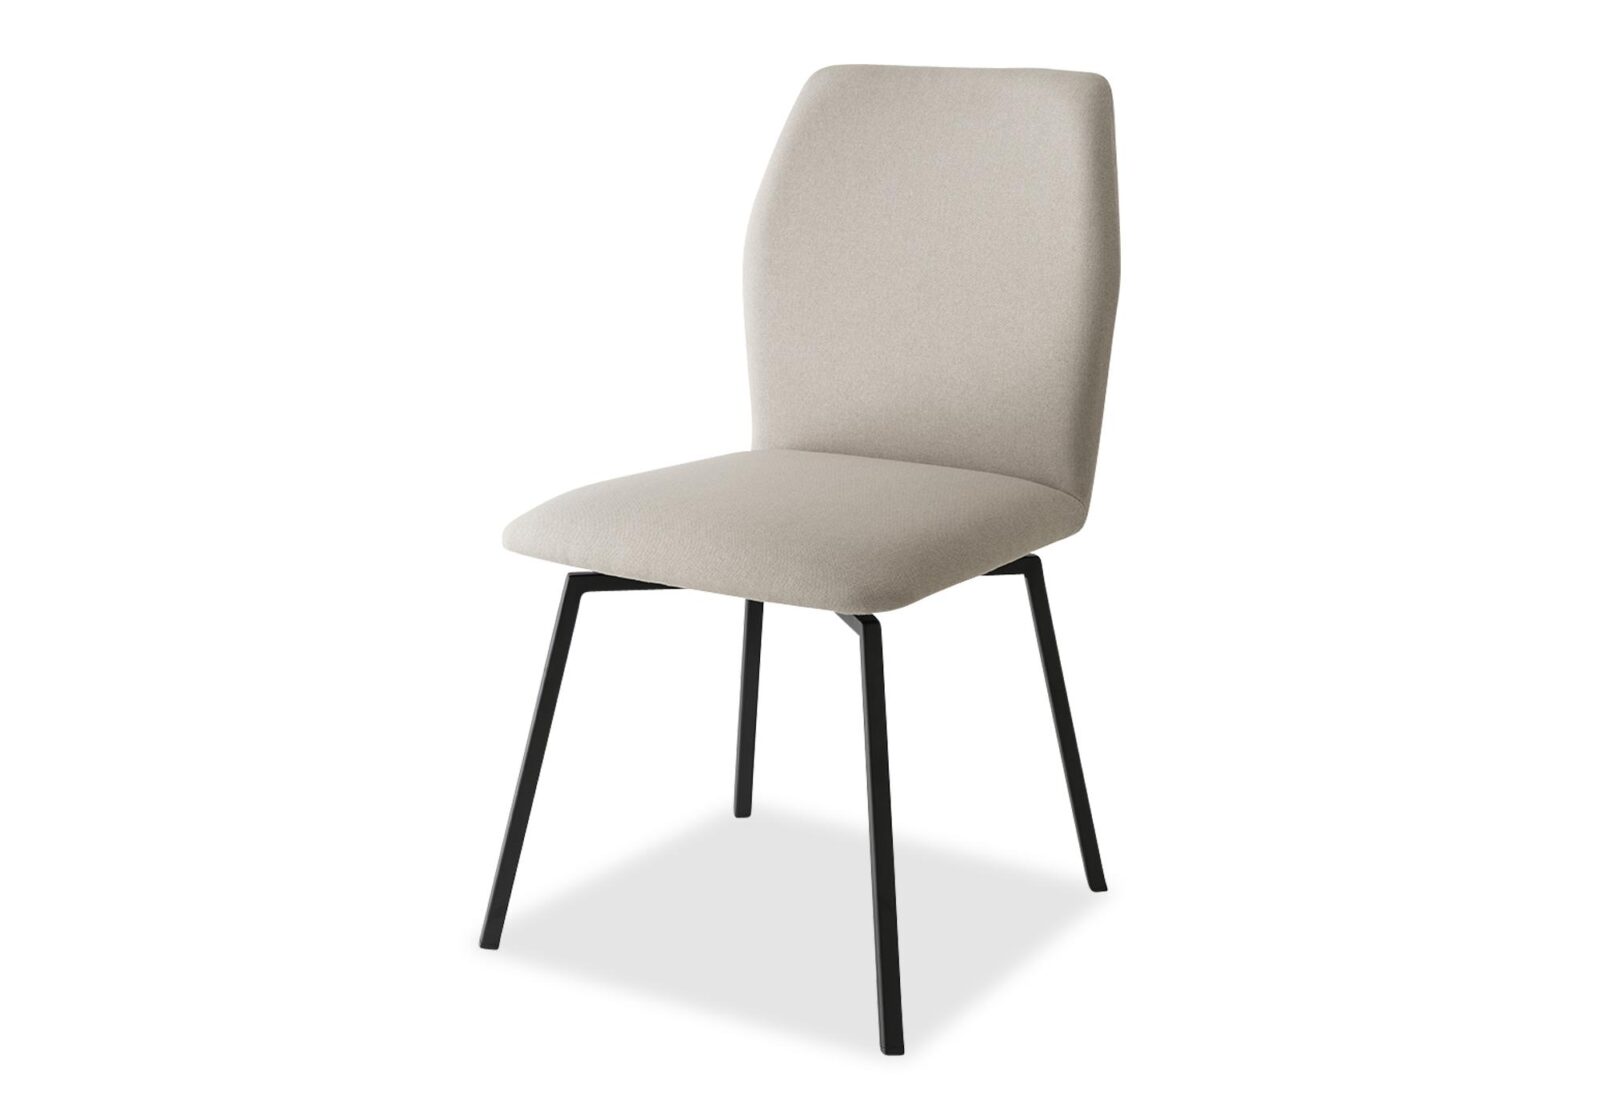 Stuhl drehbar Hexa. Bezug: Leder. Farbe: Beige. Erhältlich bei Möbel Gallati.